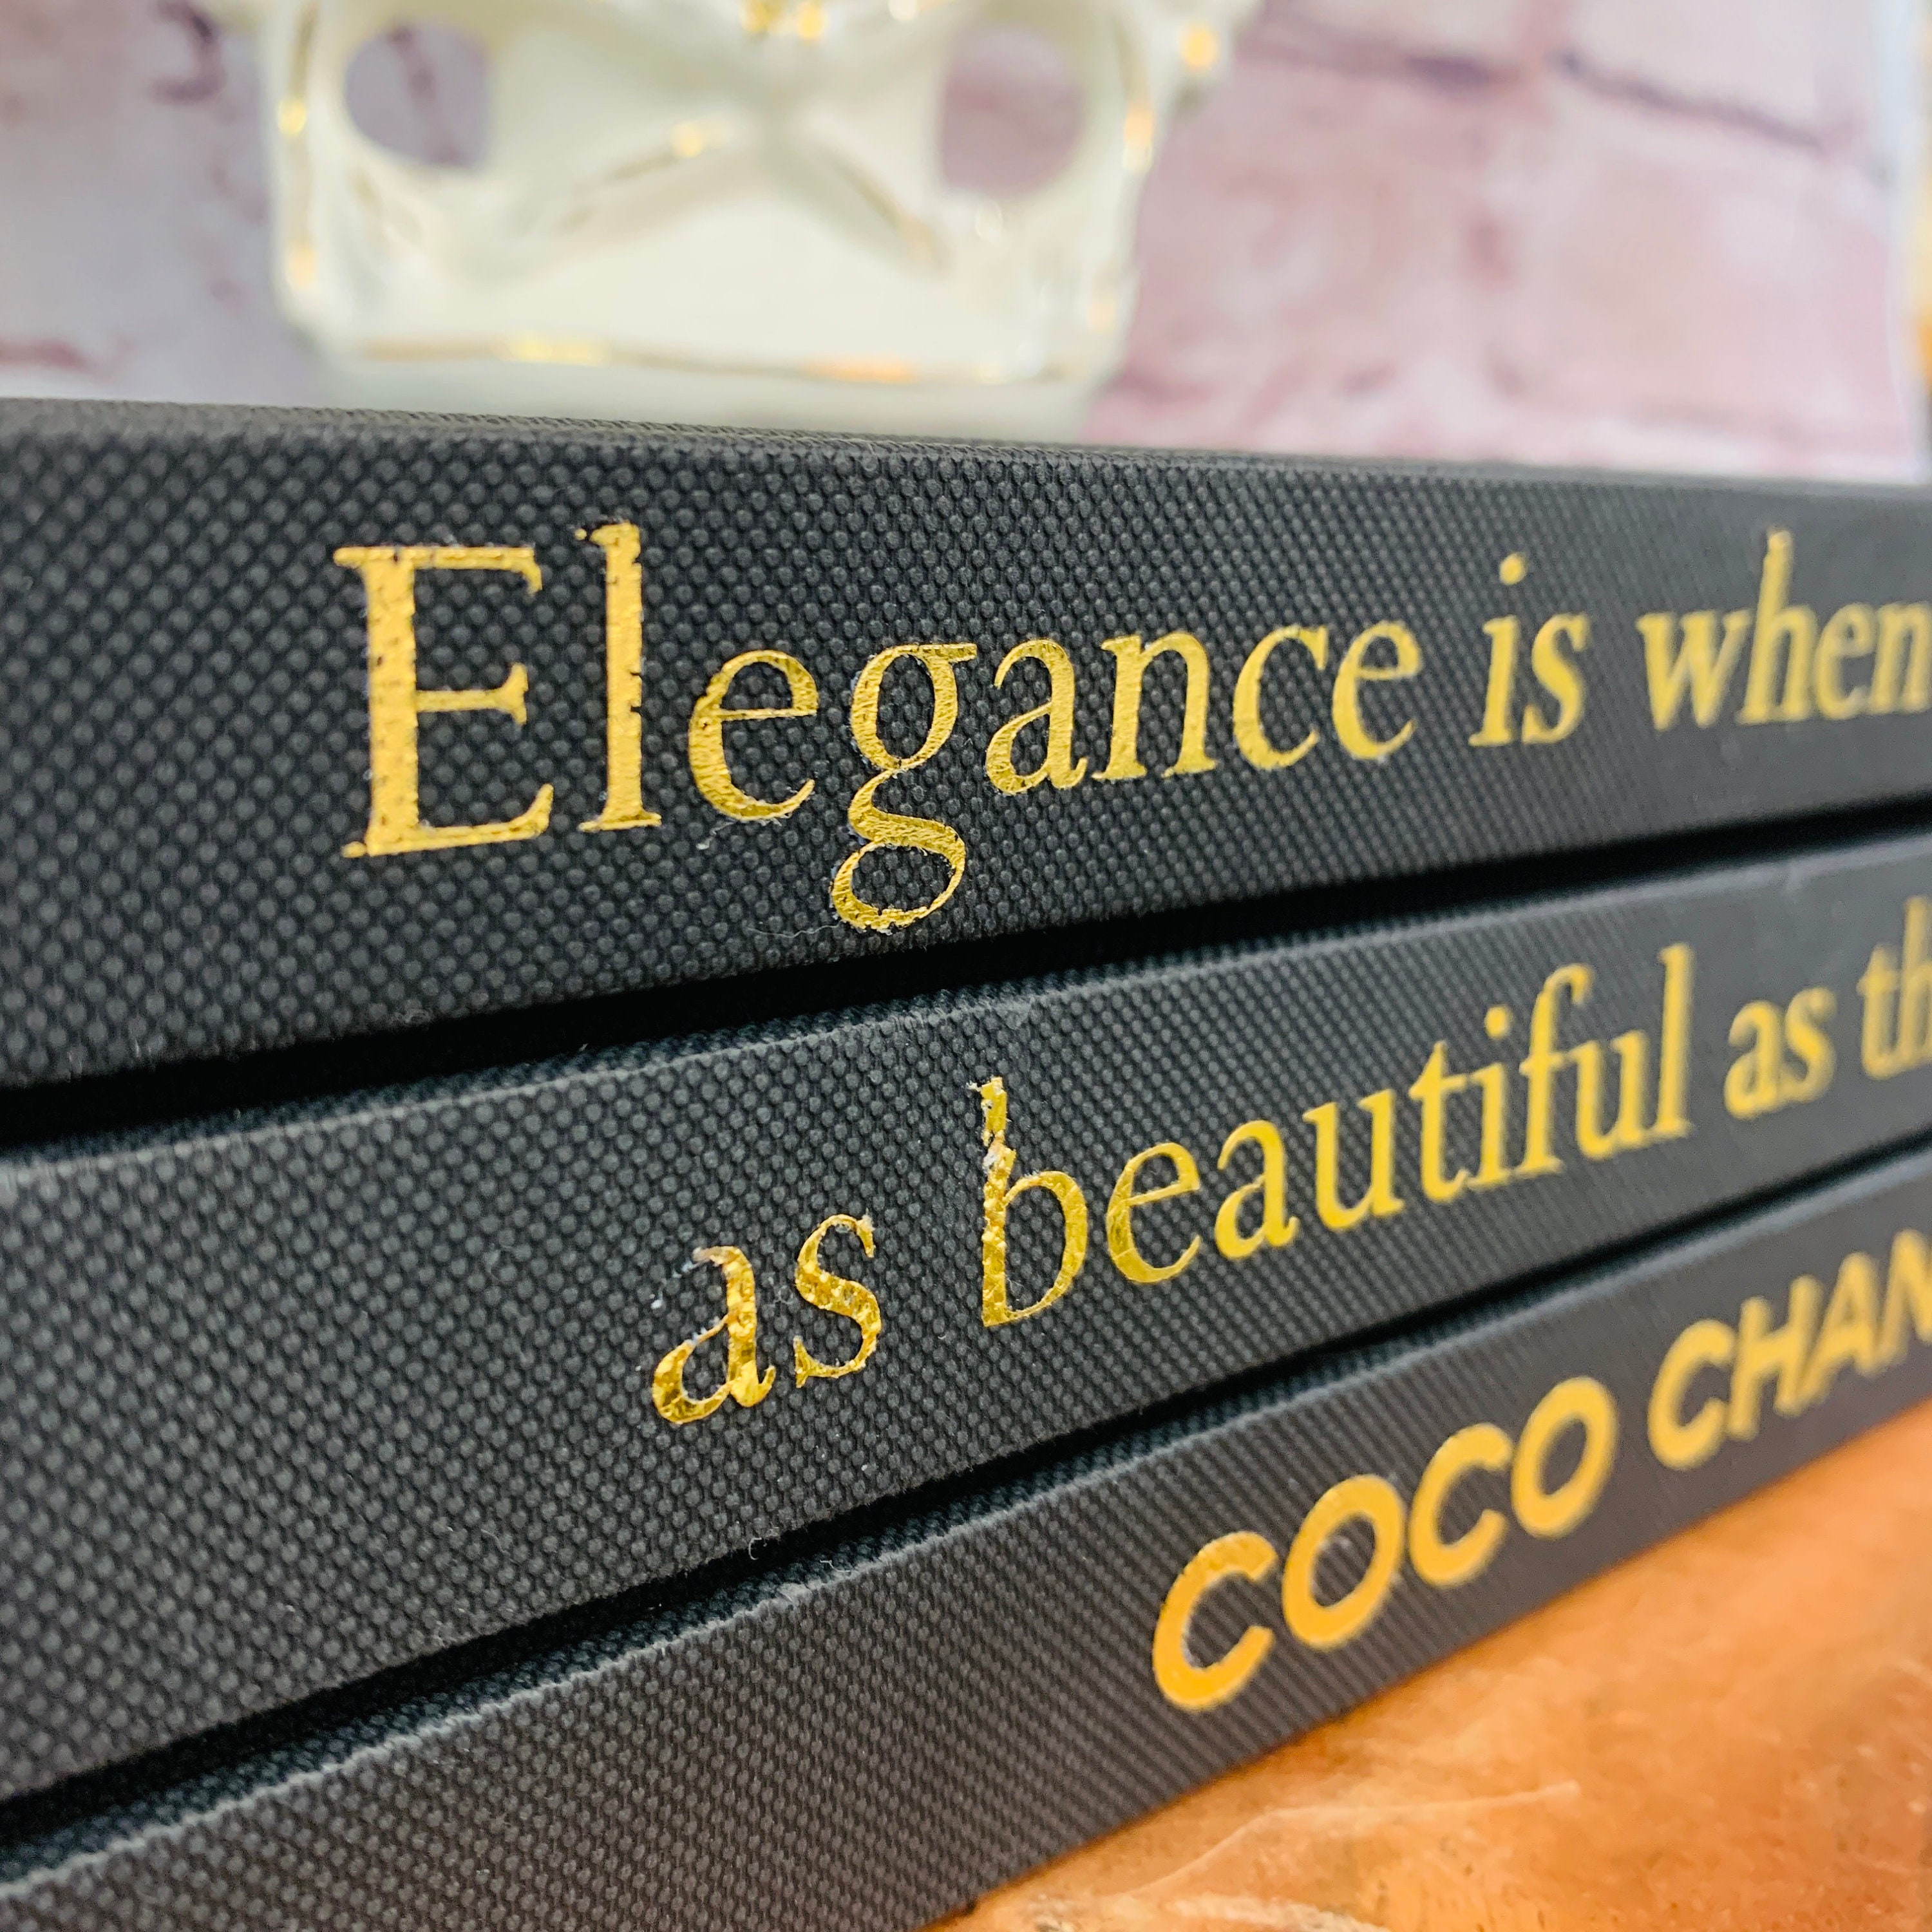 Cusom Coffee Table Book Stack, Coco Chanel Quote, Fashion Designer Books,  Designer, Elegance Quote, Personalized Gift